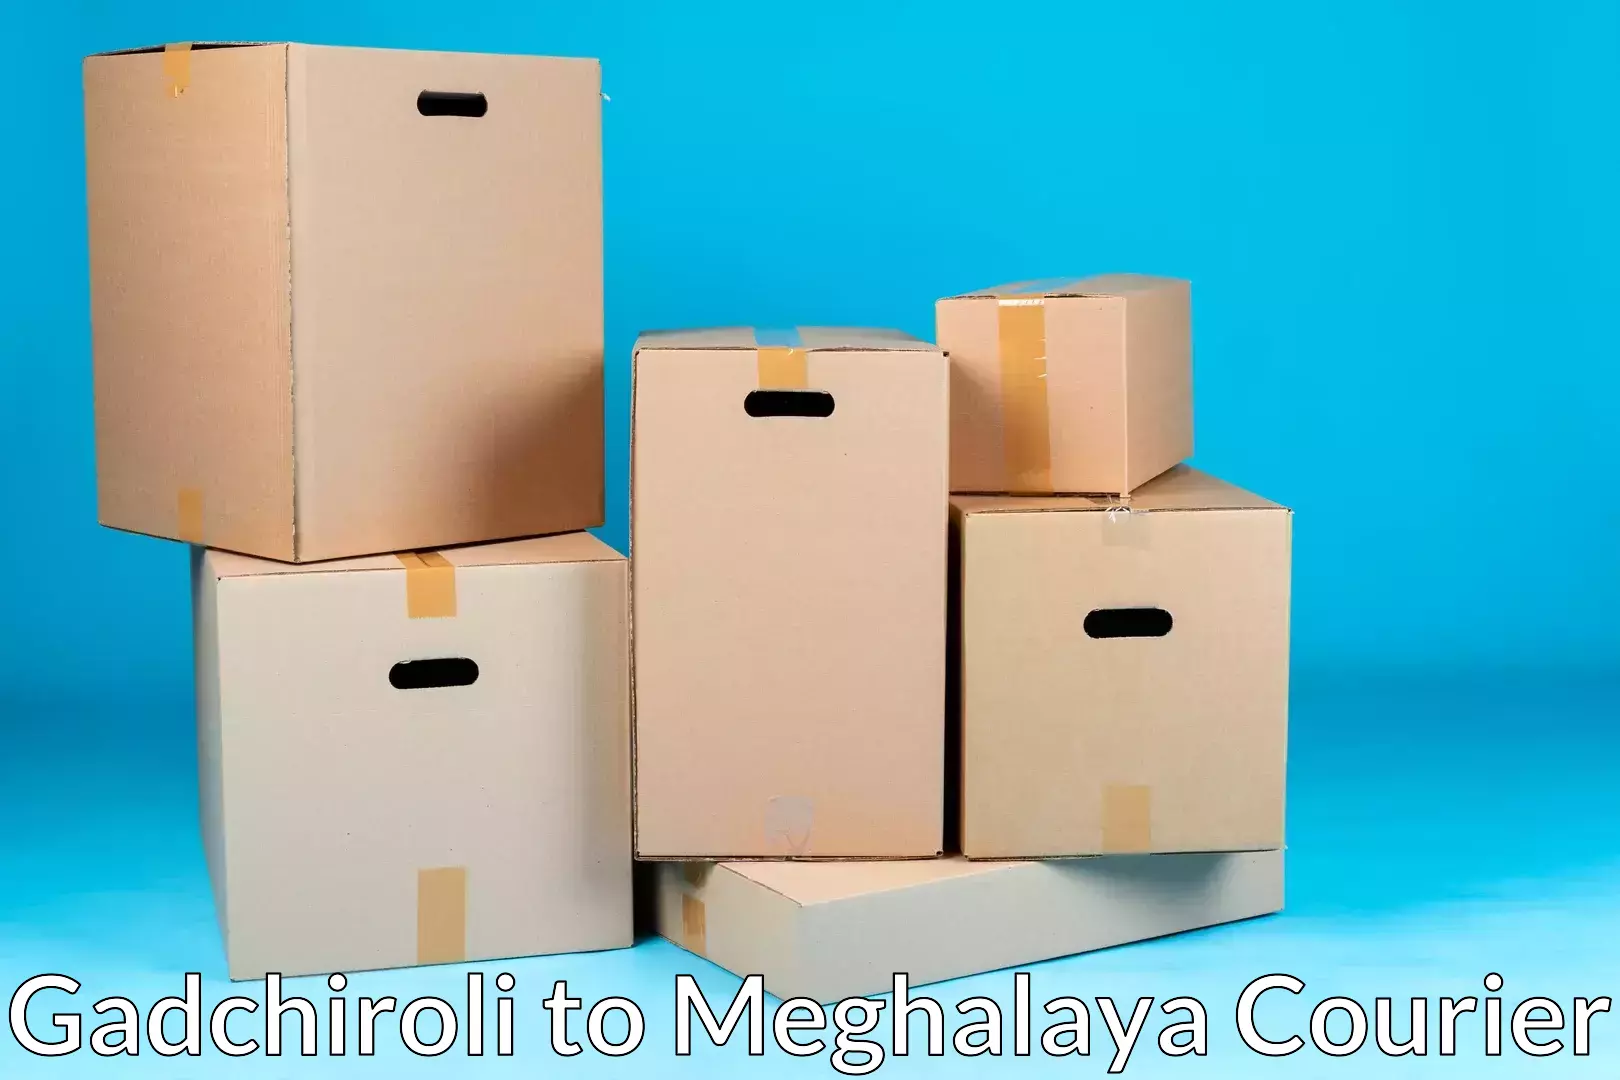 Furniture transport company Gadchiroli to Meghalaya